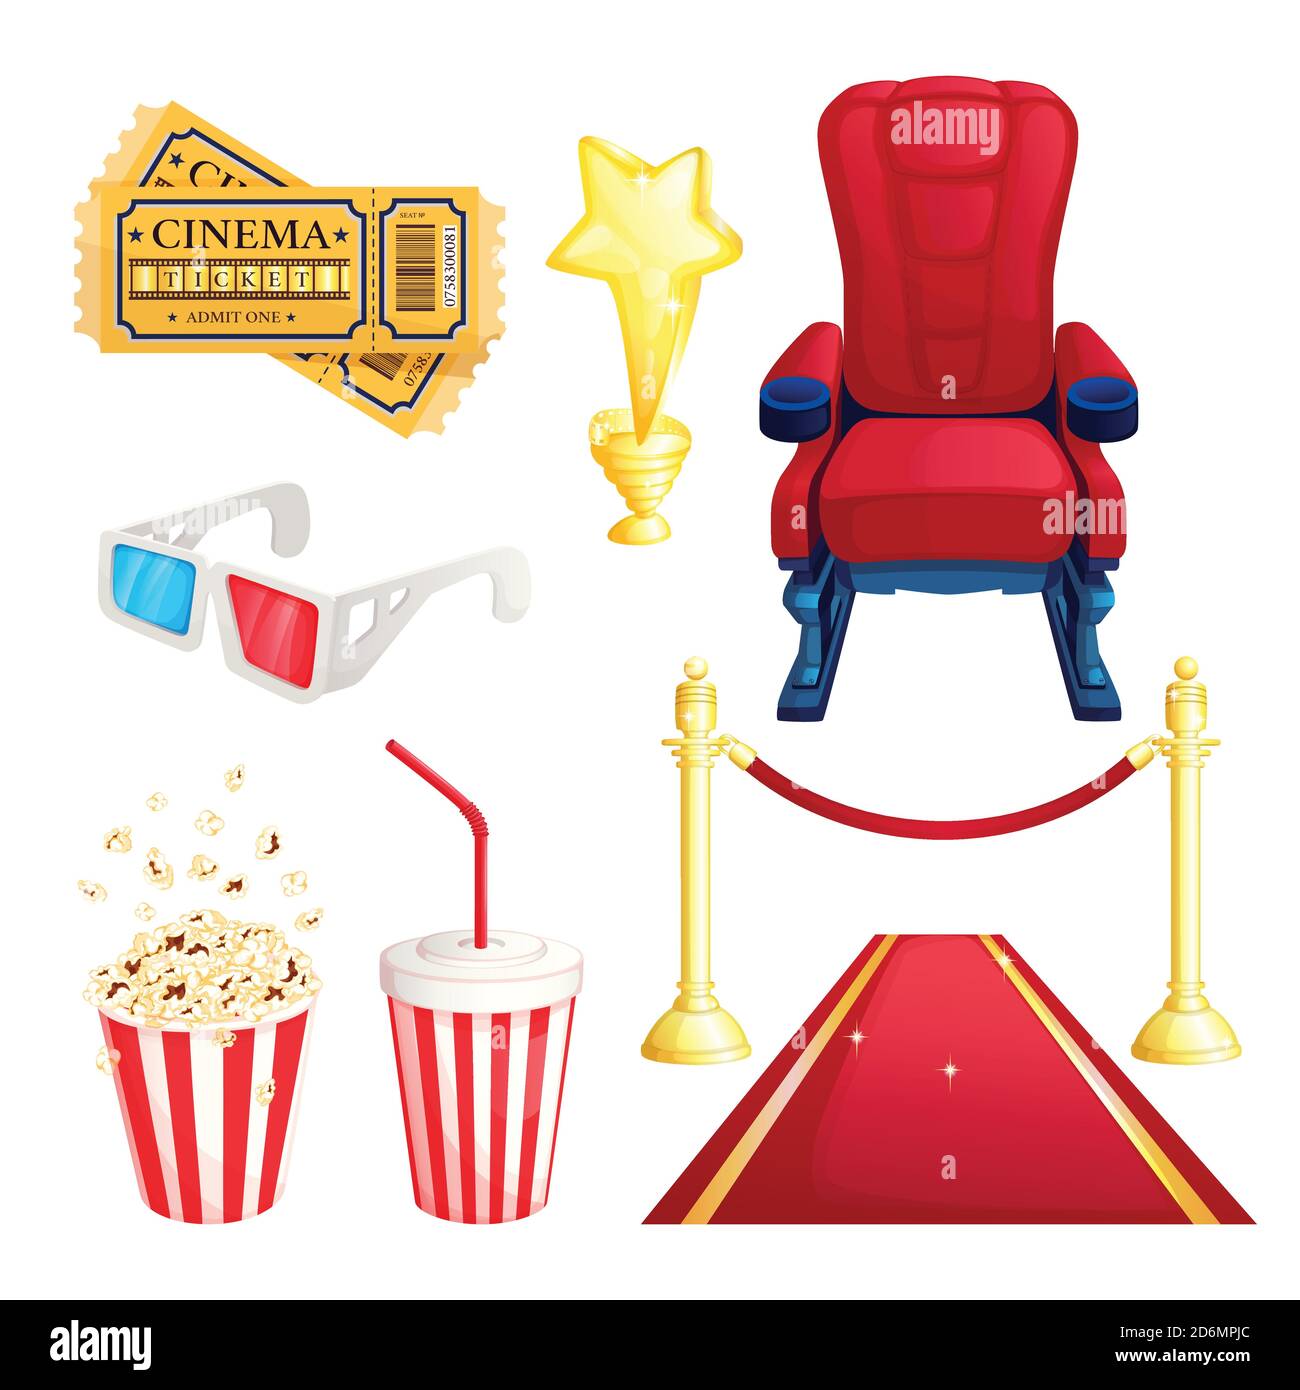 Sehen Film und Kino, Vektor-Cartoon-Symbole und Design-Elemente gesetzt. Tickets, Popcorn, roter Teppich und Sessel Illustration. Stock Vektor